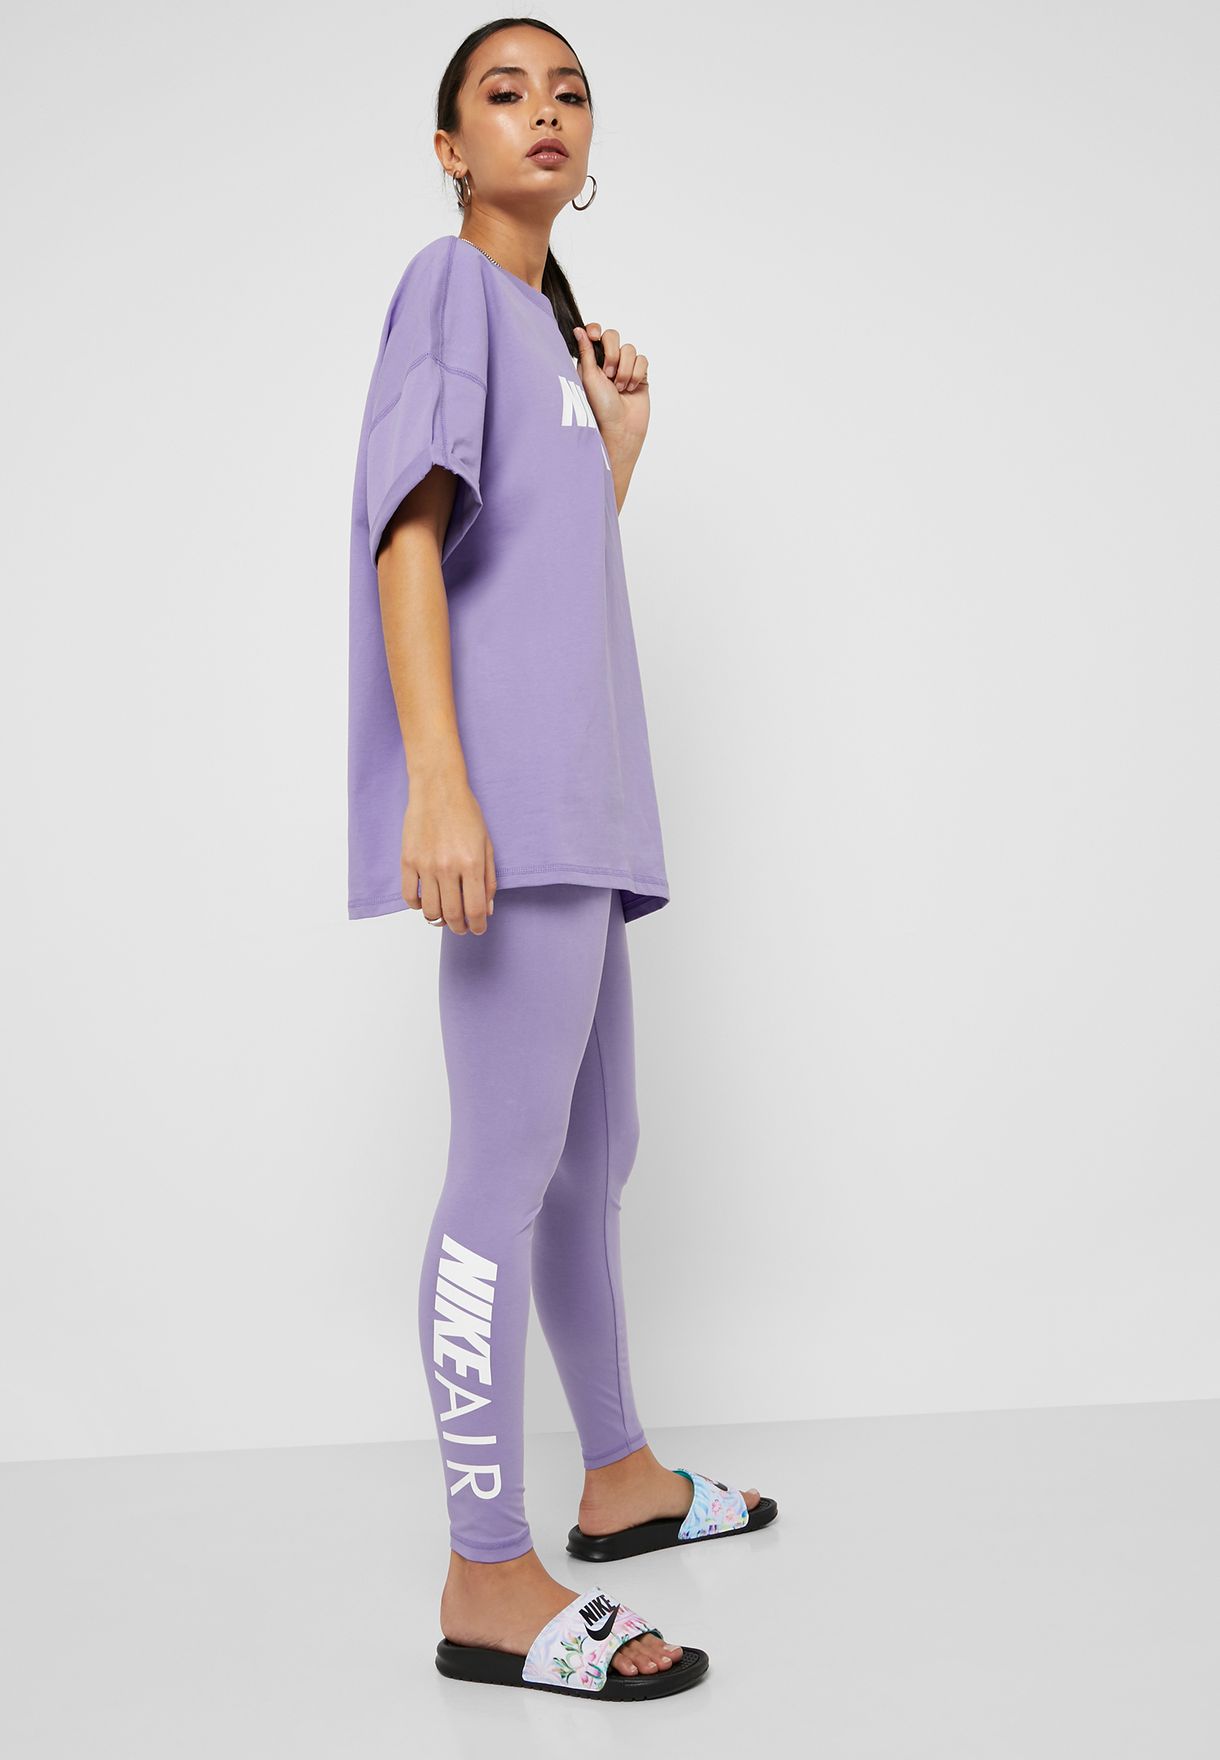 purple nike air leggings